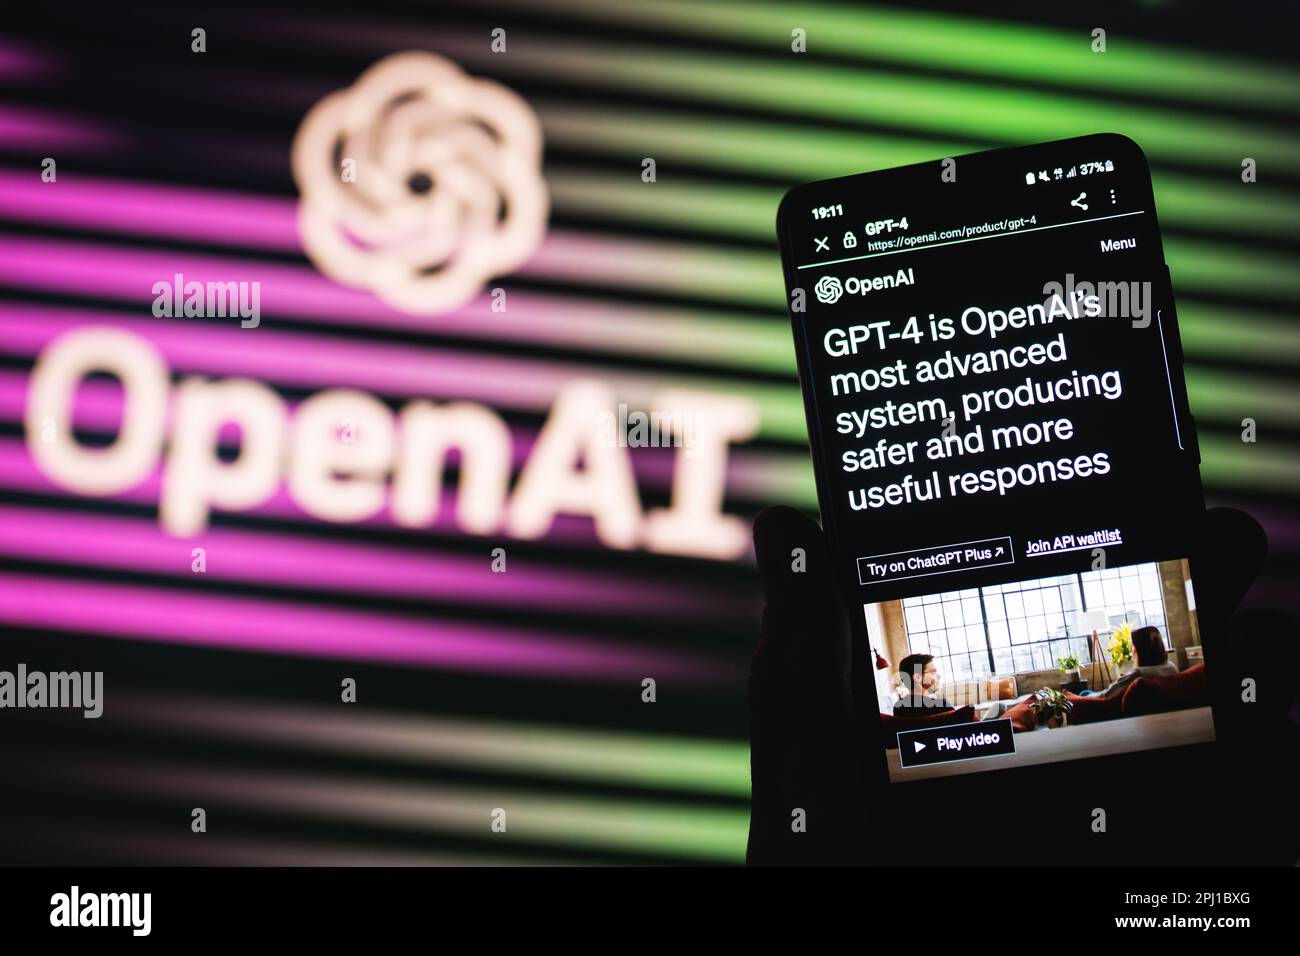 OpenAI GPT-4 ai chatbot page de libération sur l'écran du téléphone. Disponible via ChatGPT plus. Ouvrir l'arrière-plan du logo ai. Swansea, Royaume-Uni - 30 mars 2023. Banque D'Images